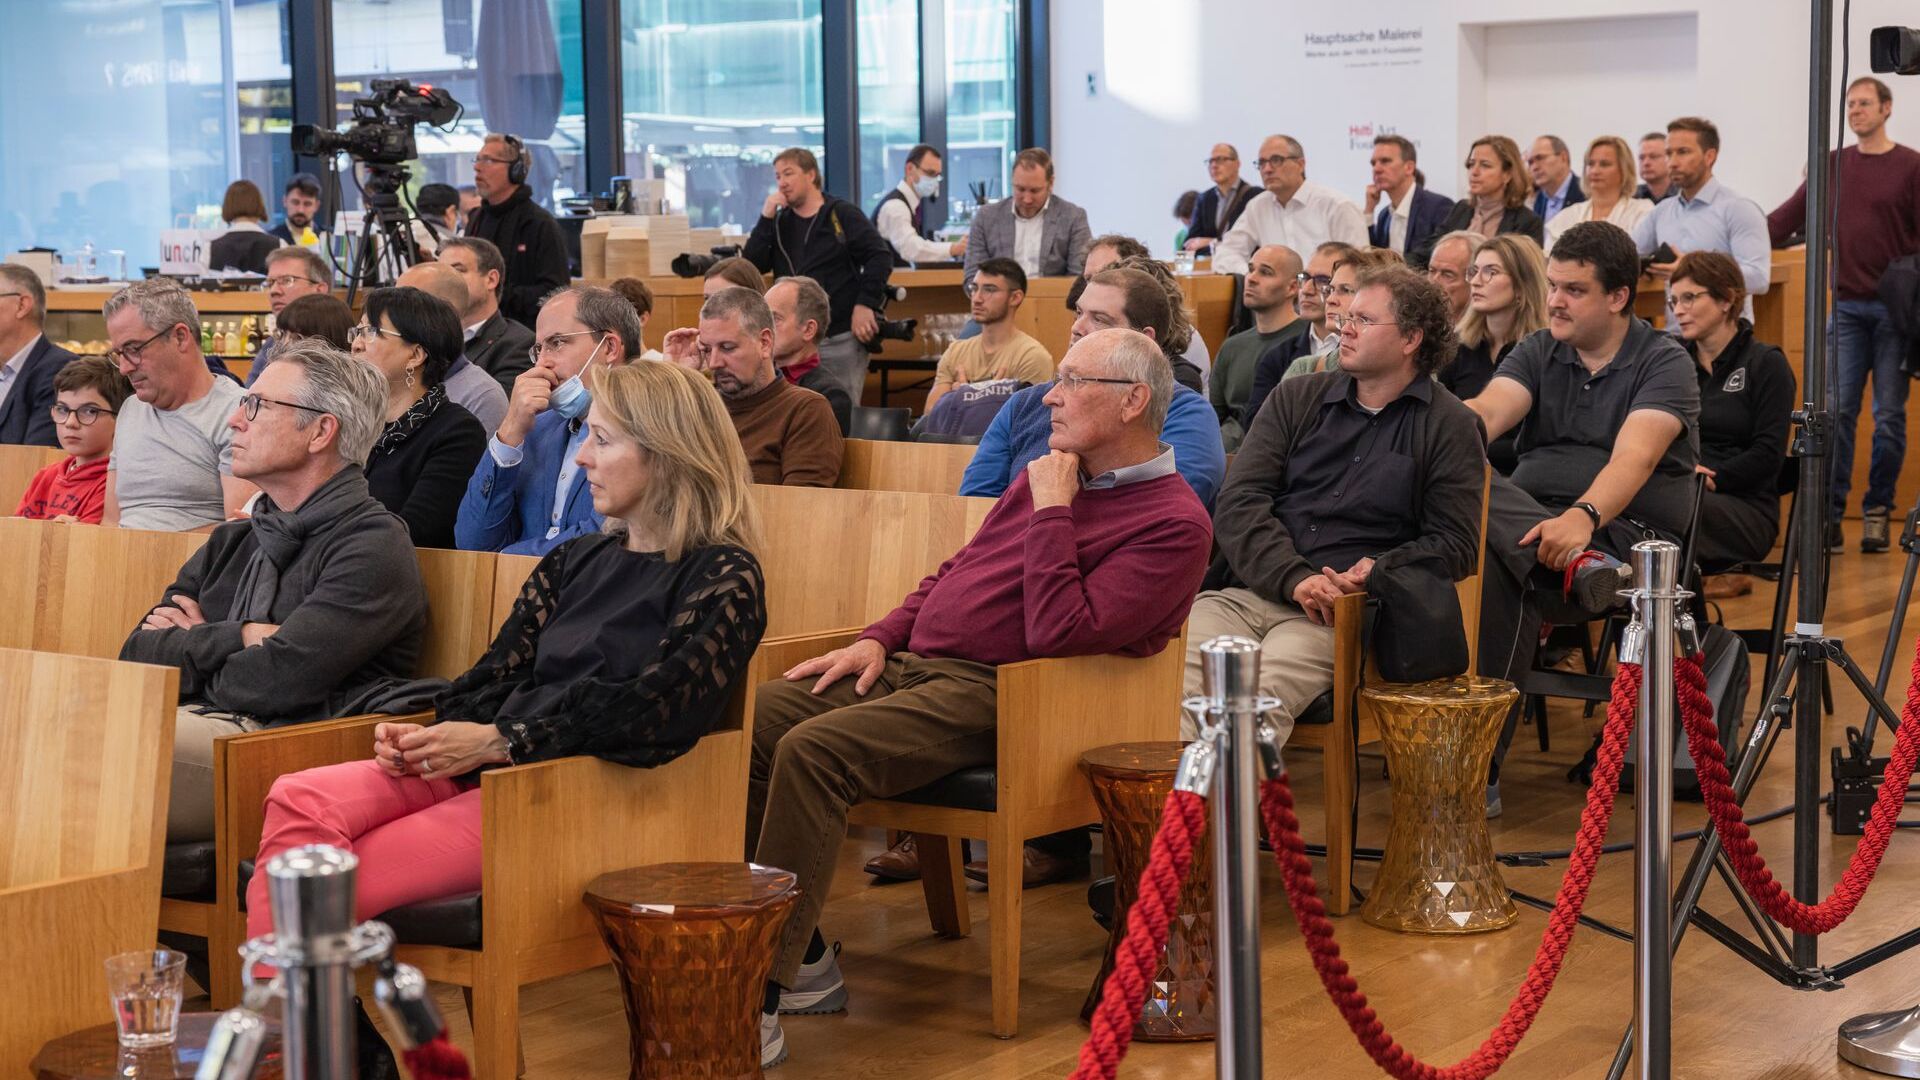 «Digitaltag Vaduz», приветствовавшийся Художественным музеем столицы Княжества Лихтенштейн в субботу, 6 ноября 2021 г., вызвал энтузиазм публики и спикеров по аналогии с «Цифровым днем ​​Швейцарии» на следующий день 10.